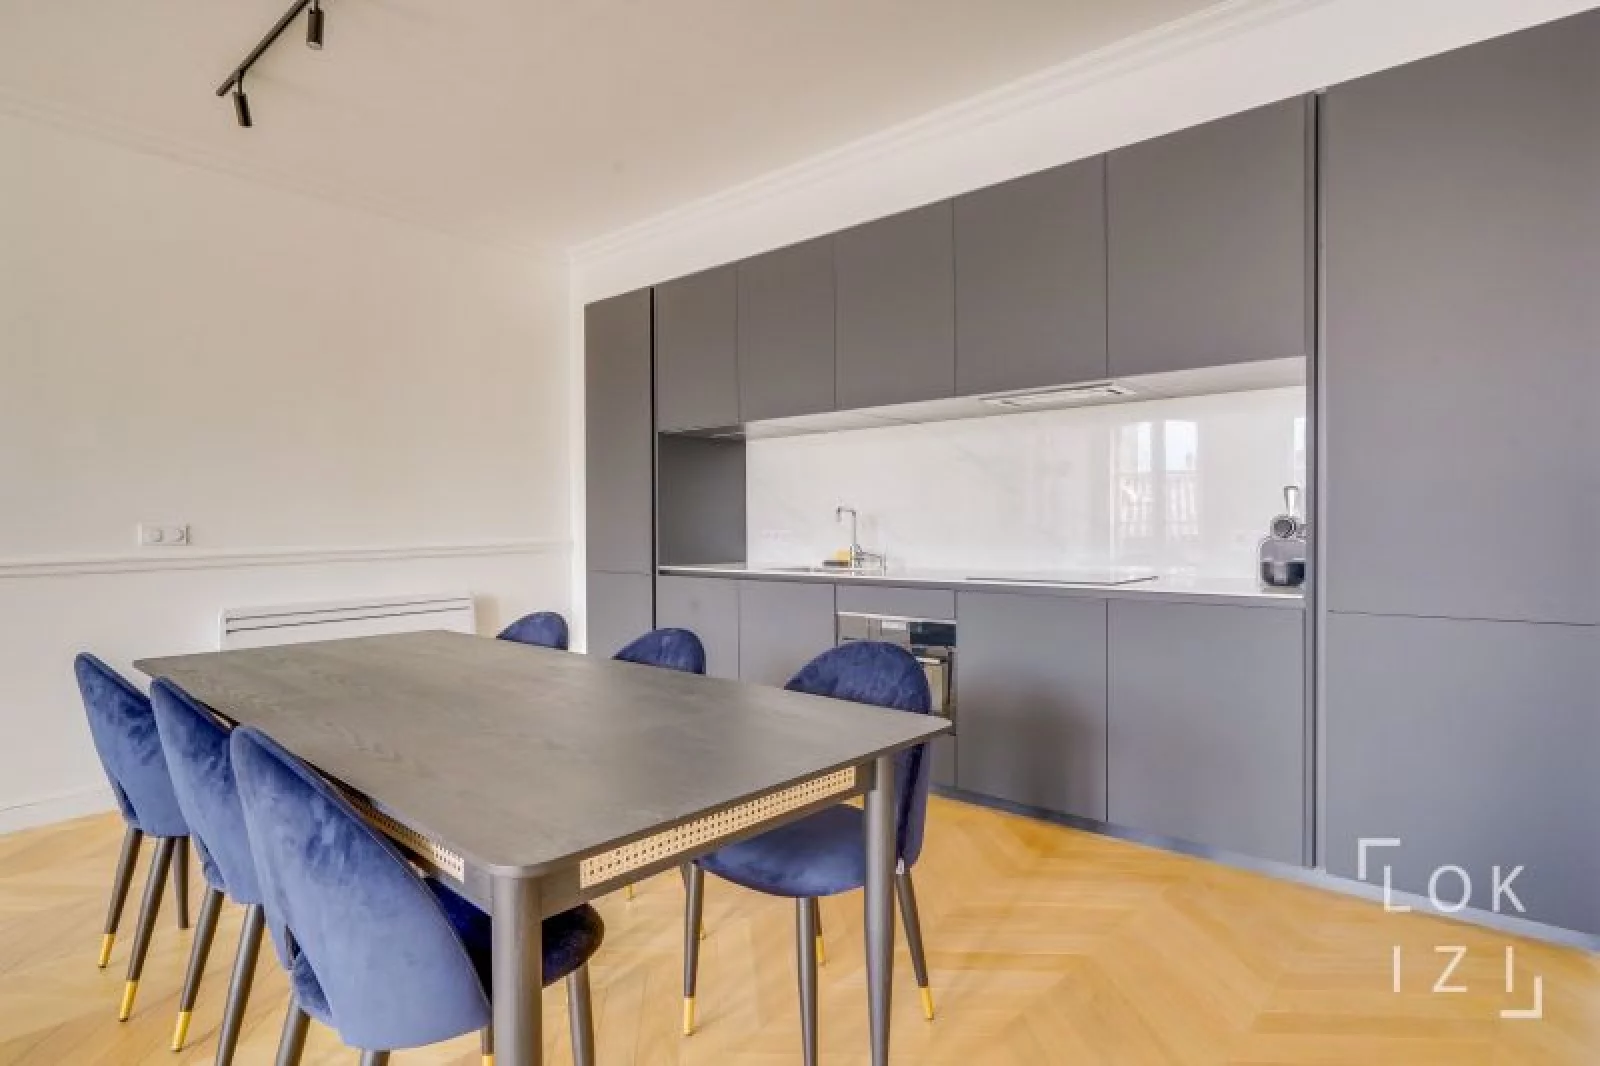 Location appartement meublé 5 pièces 110m² (Bordeaux centre - Bourse)